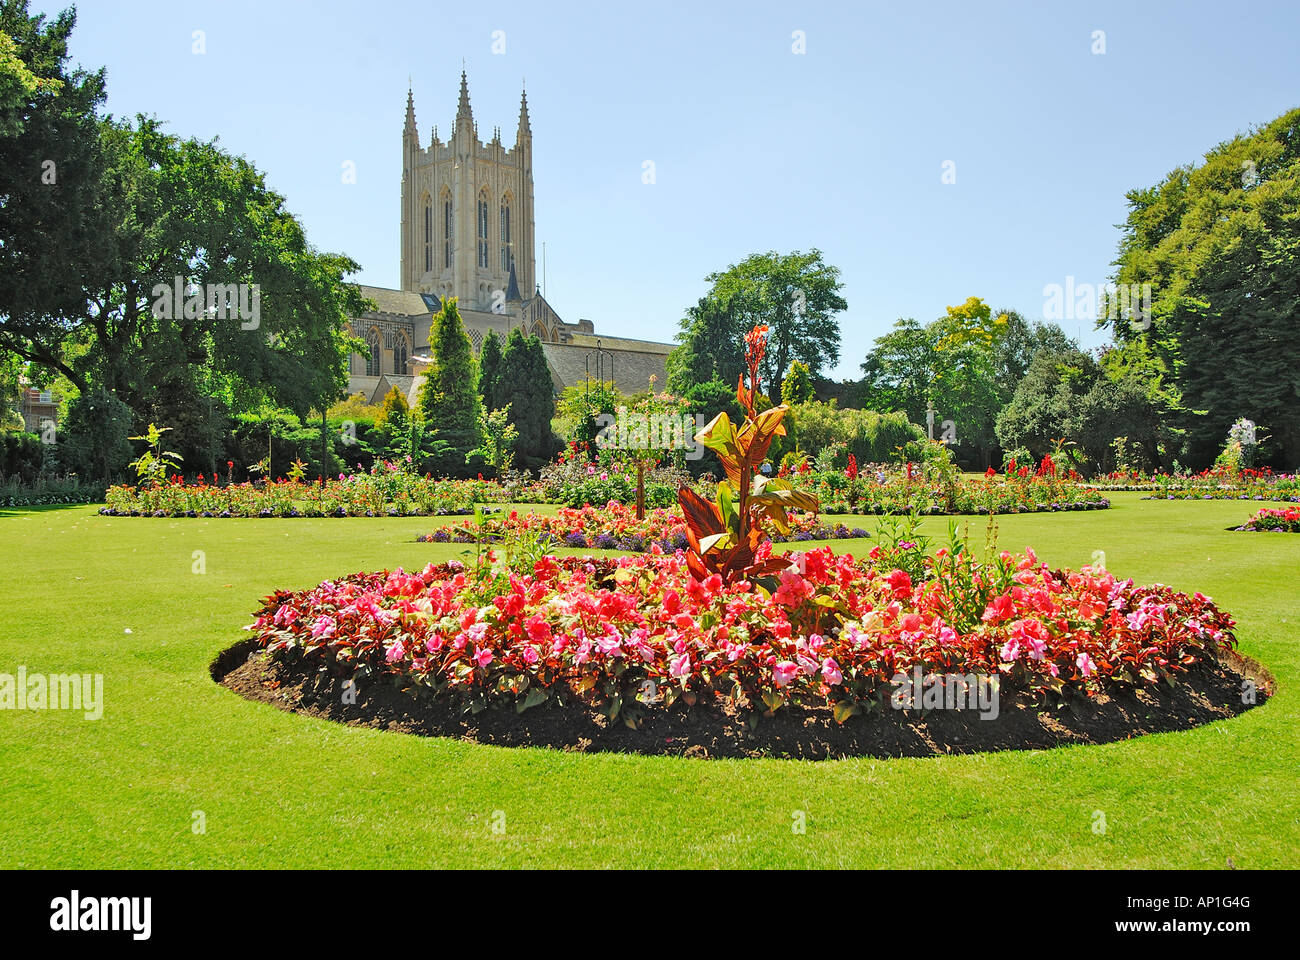 Cathédrale et jardins, Bury St Edmunds, Suffolk, UK Banque D'Images